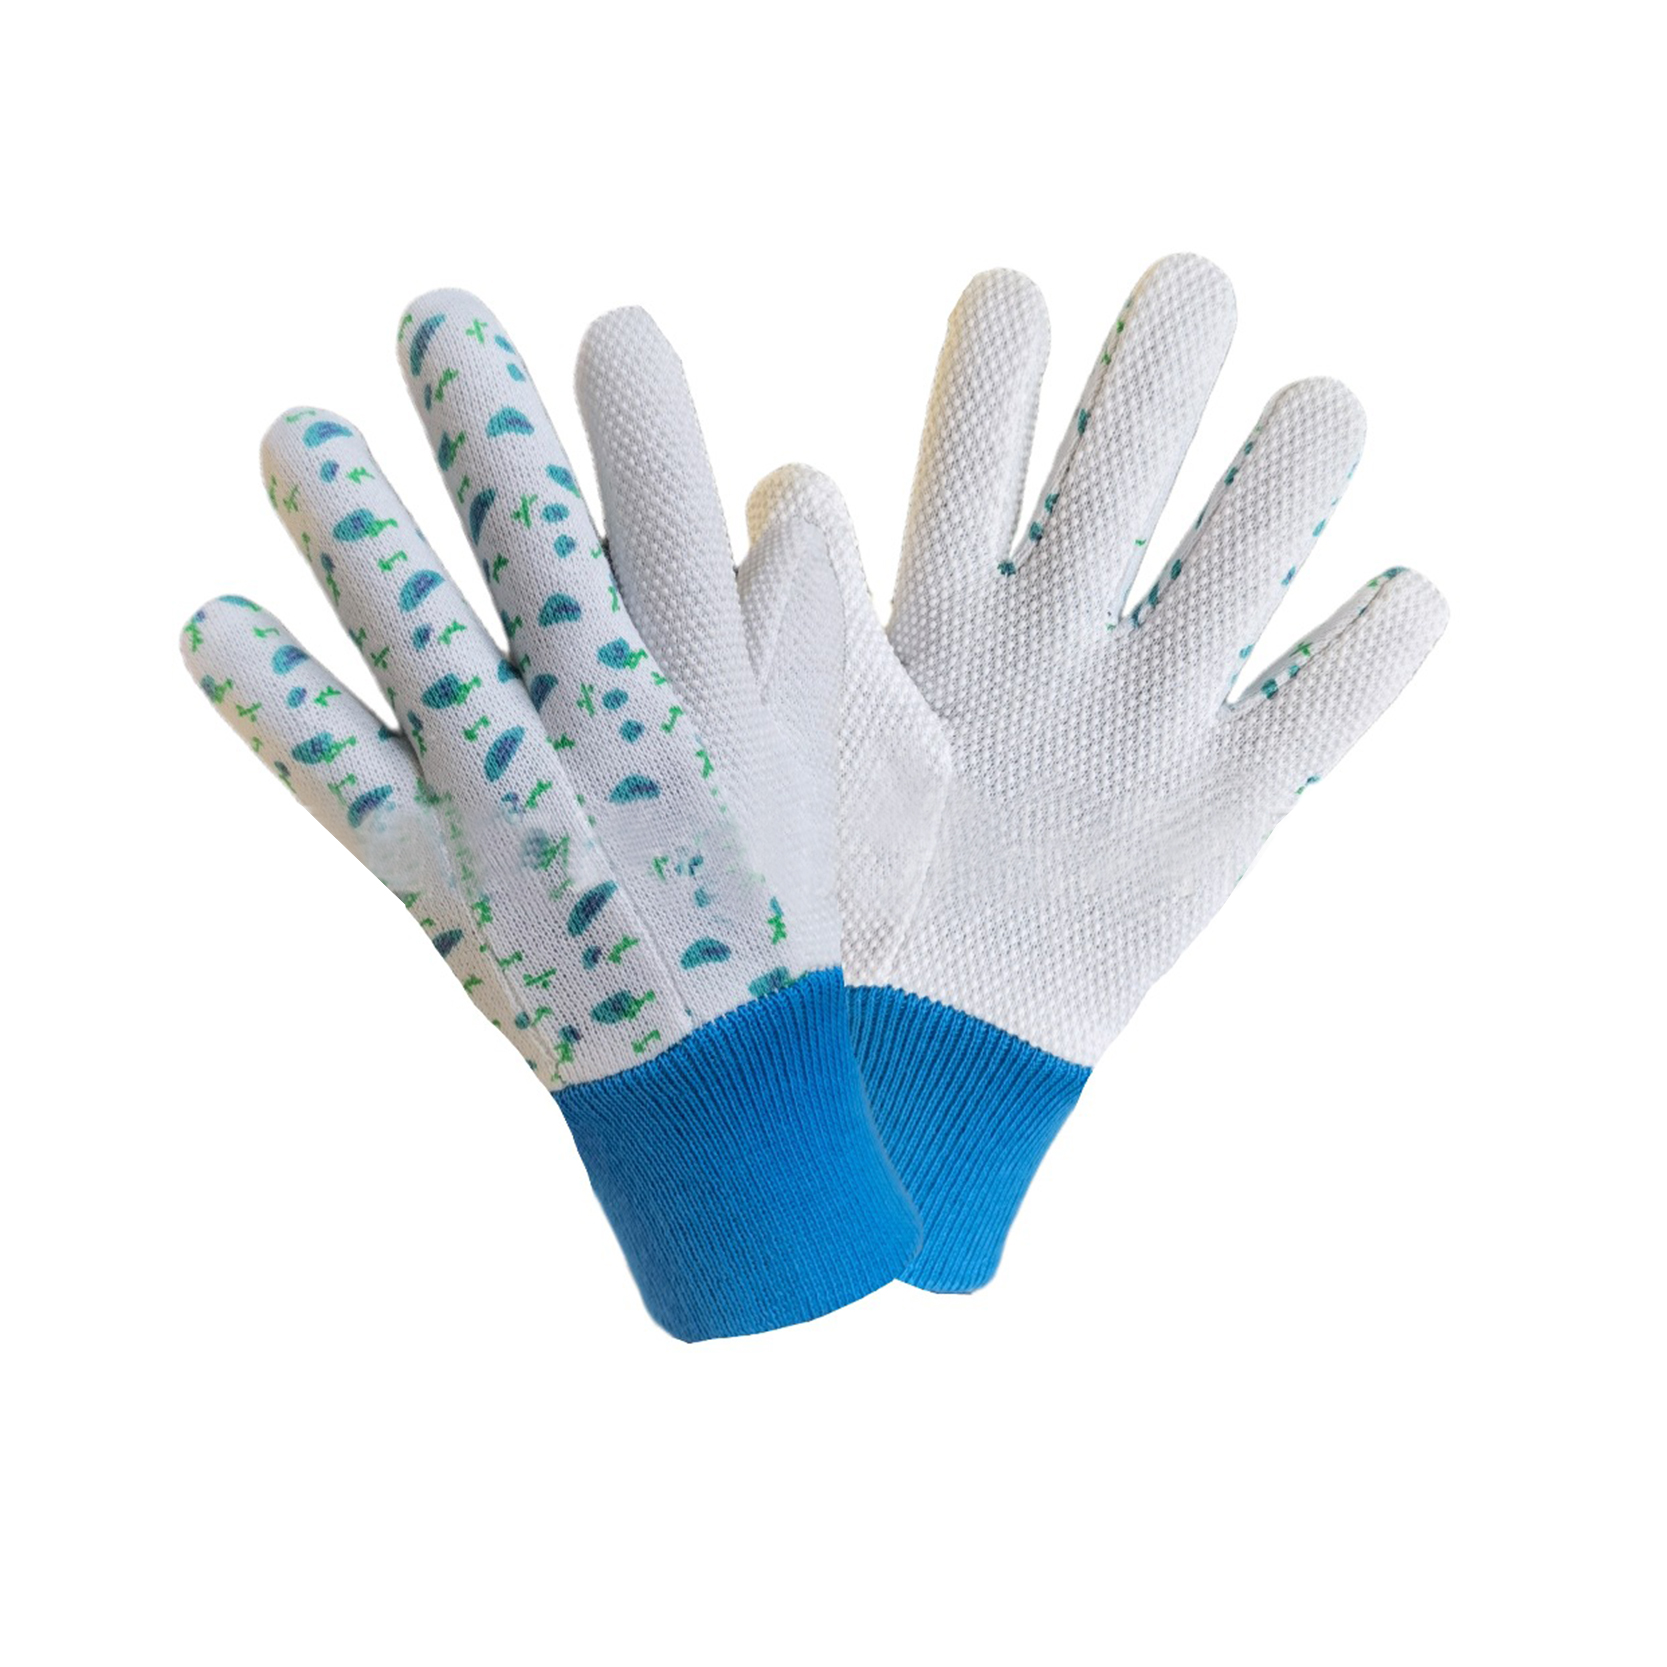 Záhradné pracovné rukavice s pvc bodkami na dlani, dámske rukavice cena